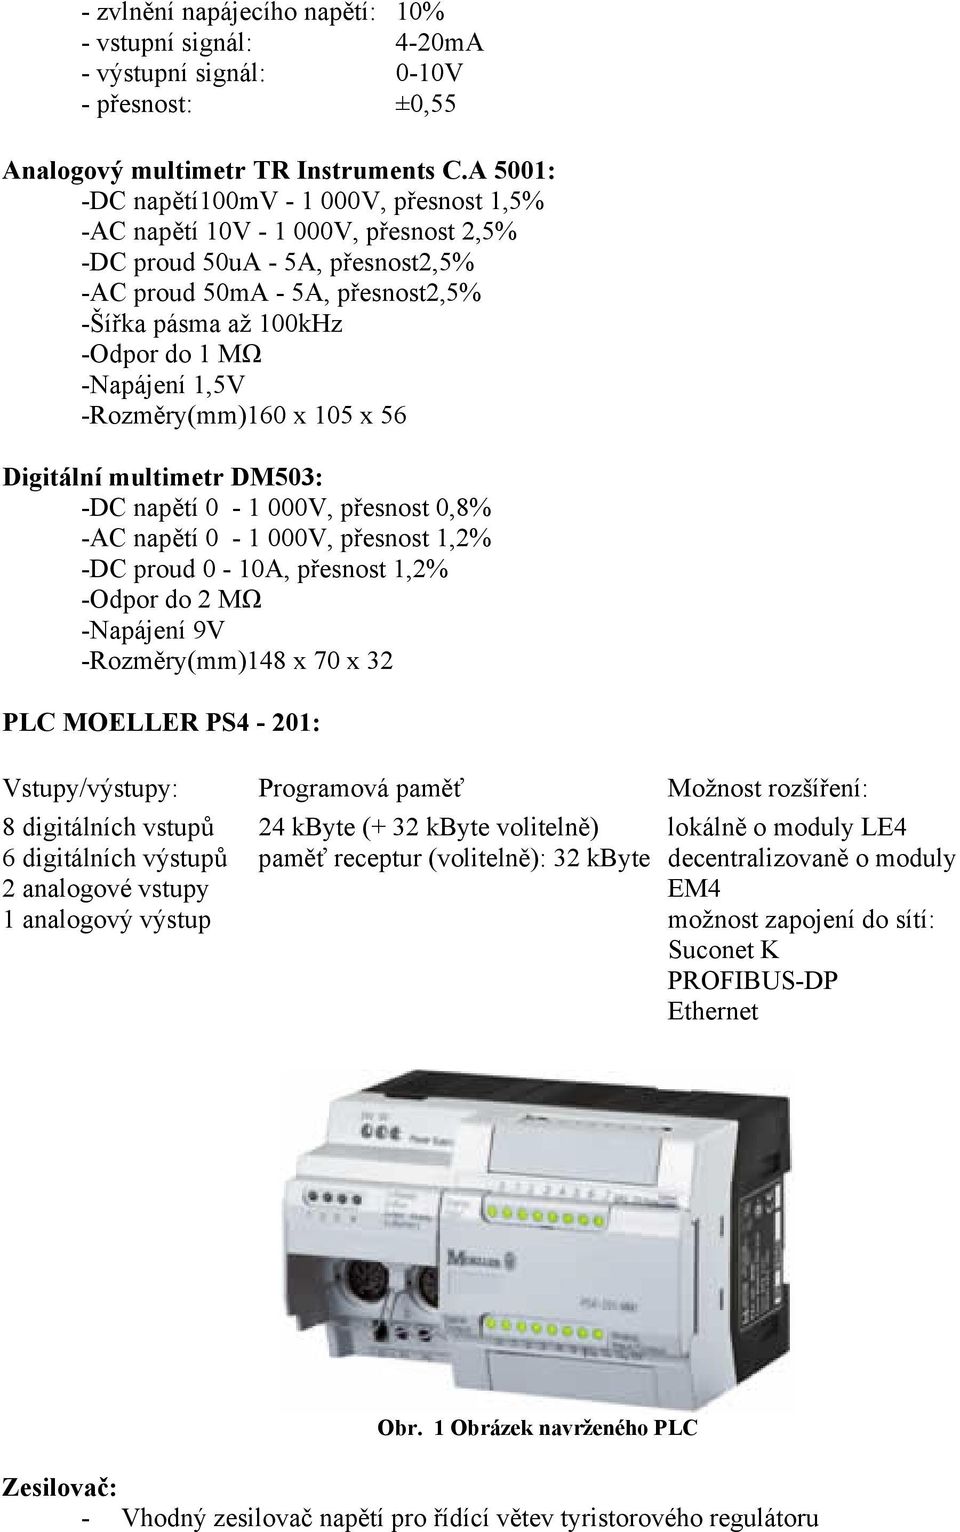 Digitálí multimetr DM503: -DC apětí 0-000V, přeot 0,8% -AC apětí 0-000V, přeot,% -DC proud 0-0A, přeot,% -Odpor do MΩ -Napájeí 9V -Rozměry(mm)48 x 70 x 3 PLC MOELLER PS4-0: Vtupy/výtupy: Programová